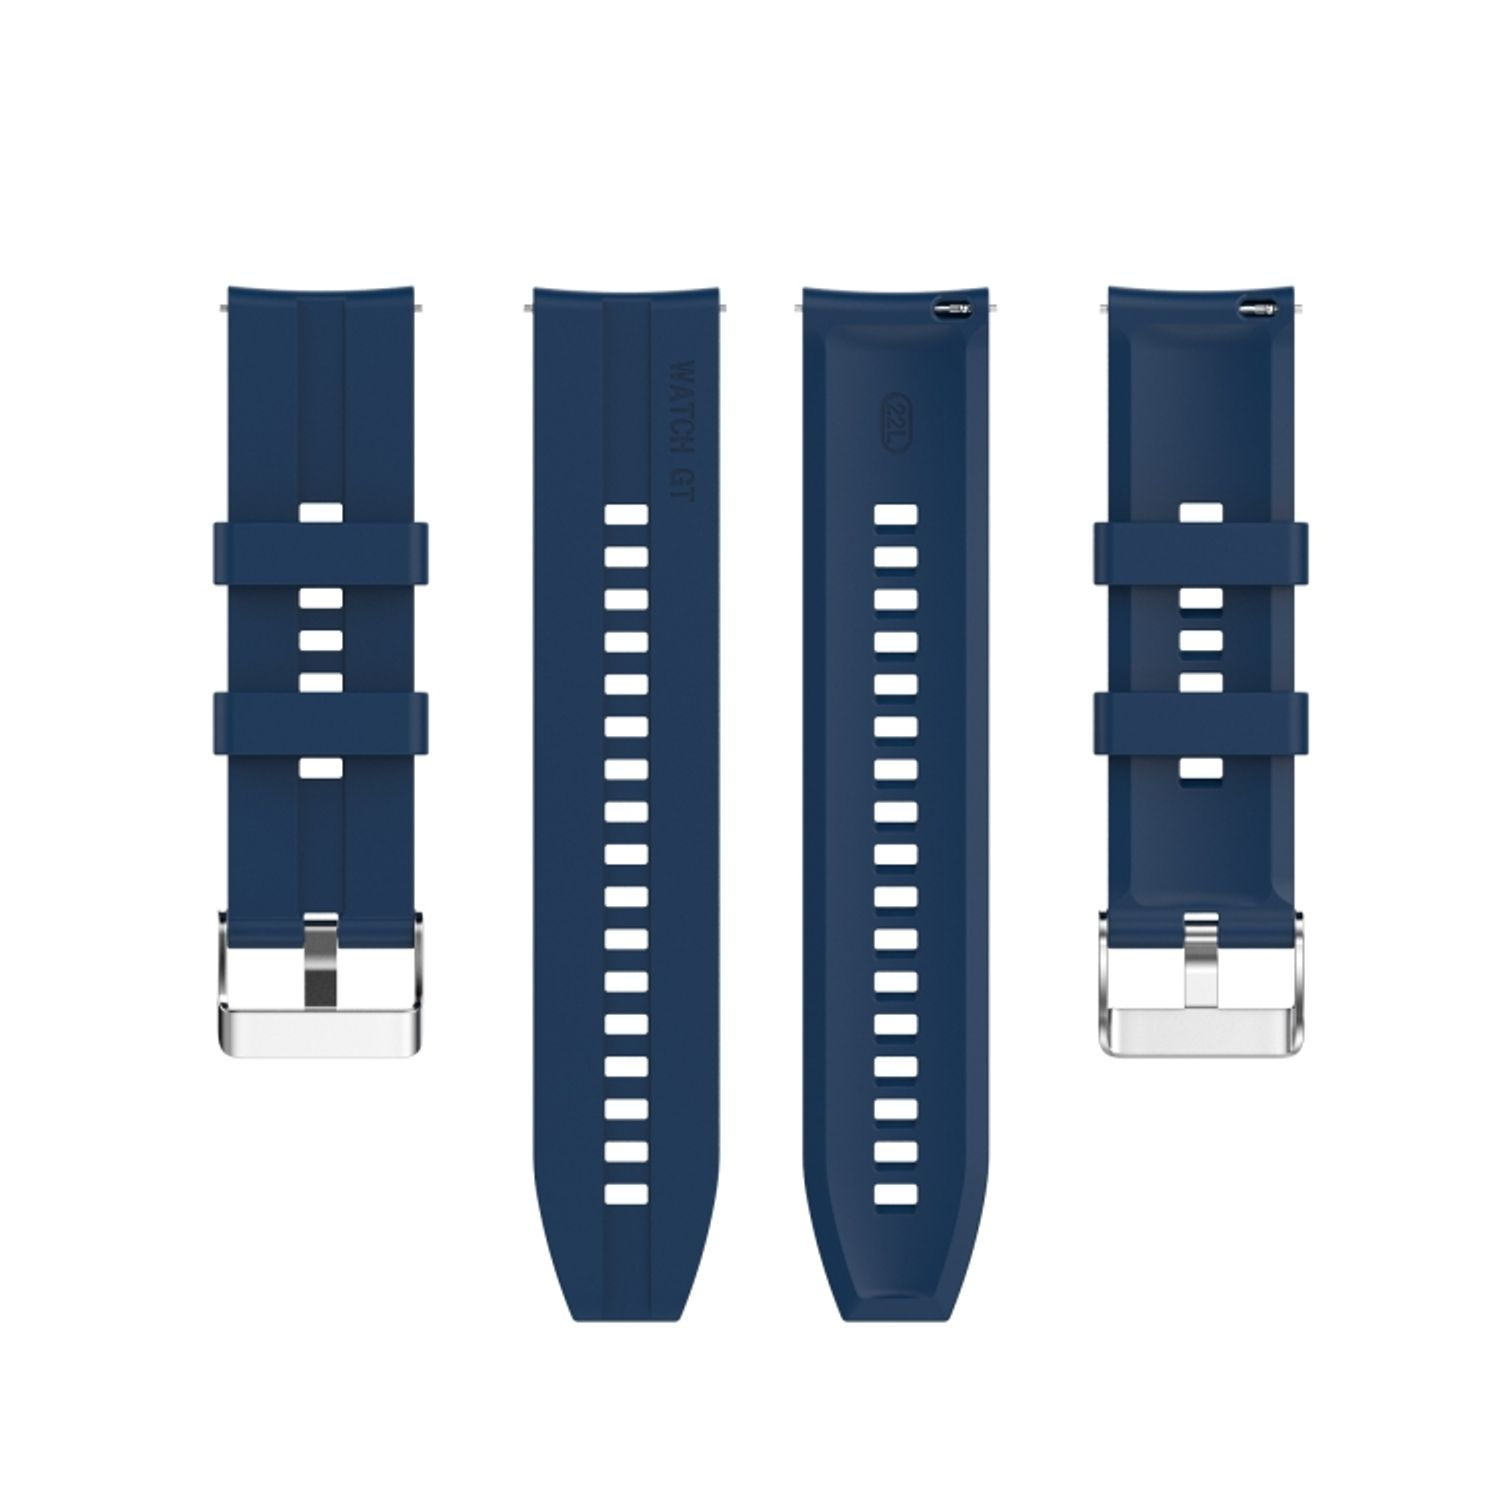 KÖNIG DESIGN Sportarmband, Blau GT 46mm, Huawei, Watch 3 Ersatzband